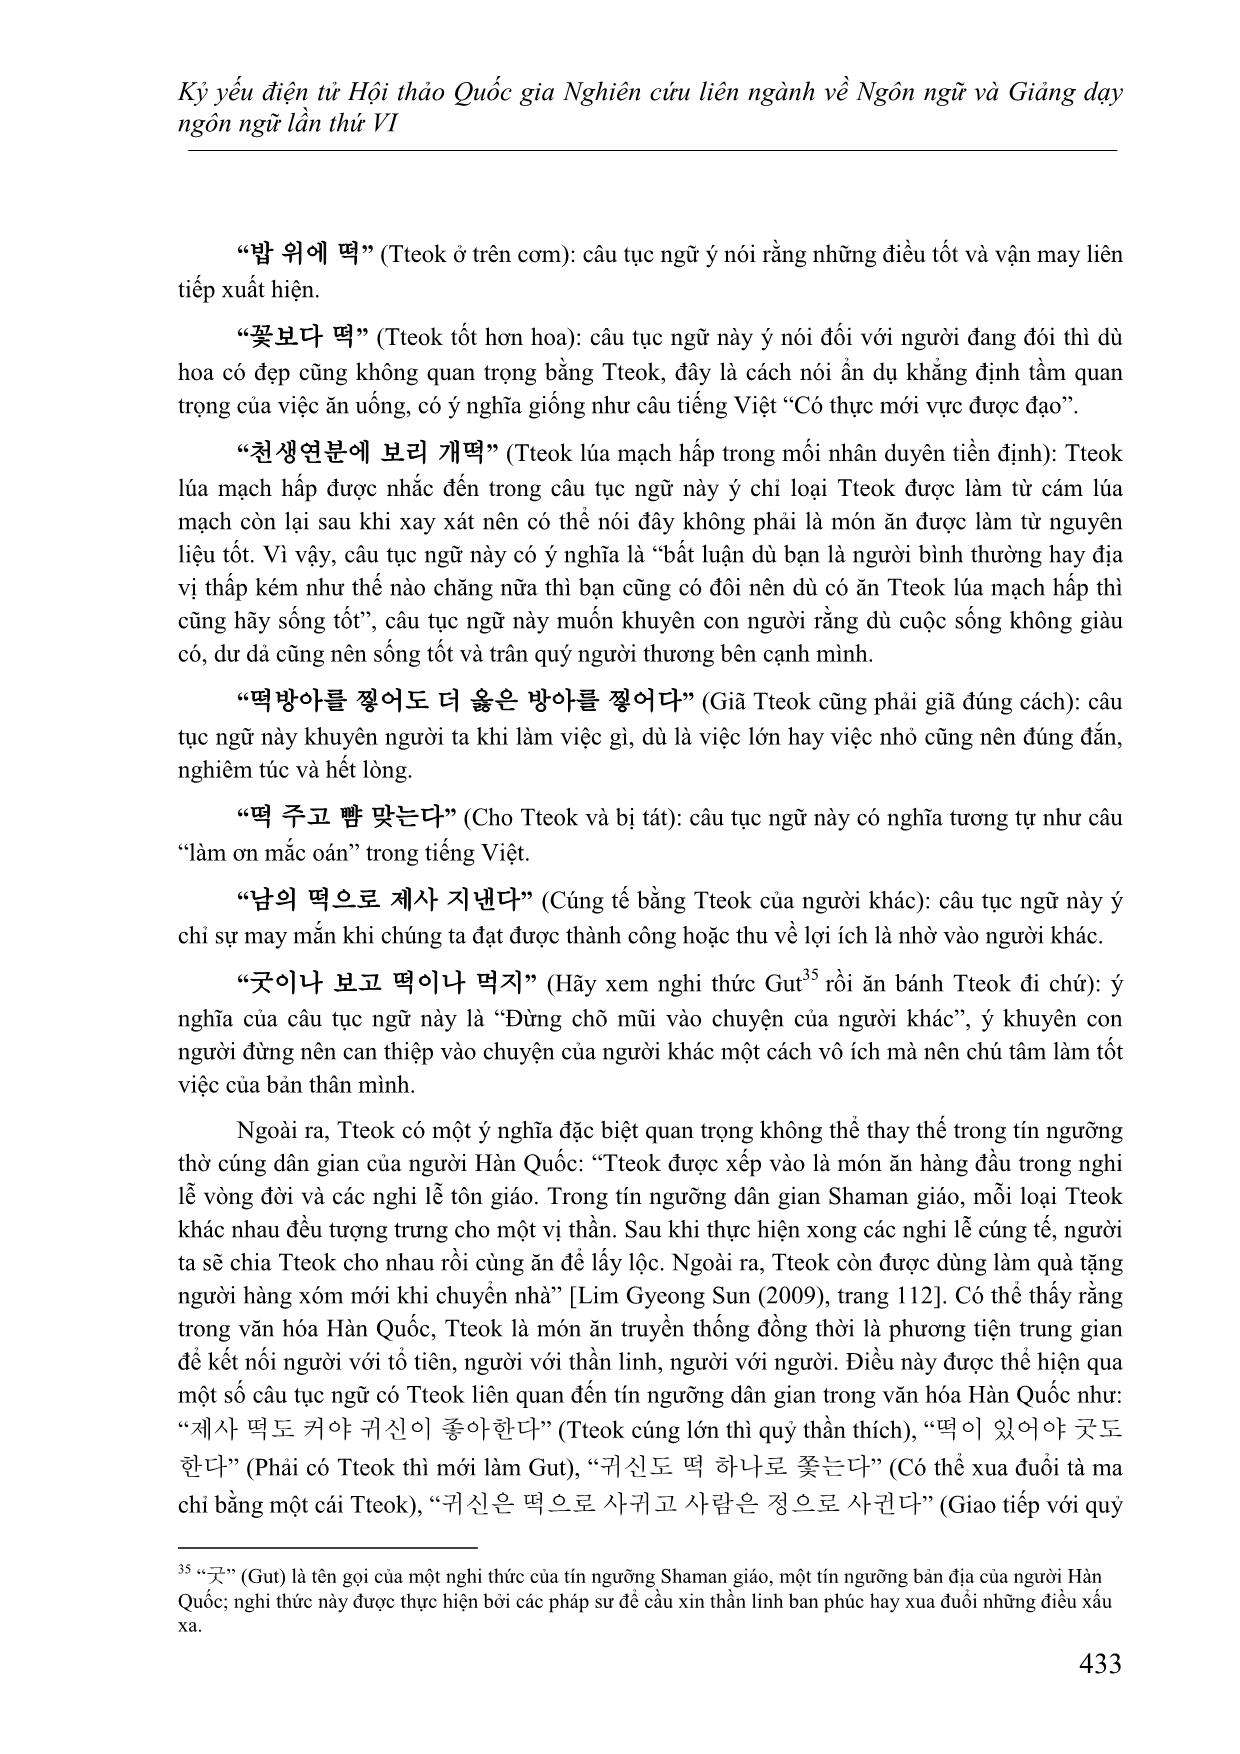 Đặc điểm ngôn ngữ và văn hóa Hàn Quốc được biểu hiện qua yếu tố “tteok” trong quán dụng ngữ và tục ngữ tiếng Hàn trang 8